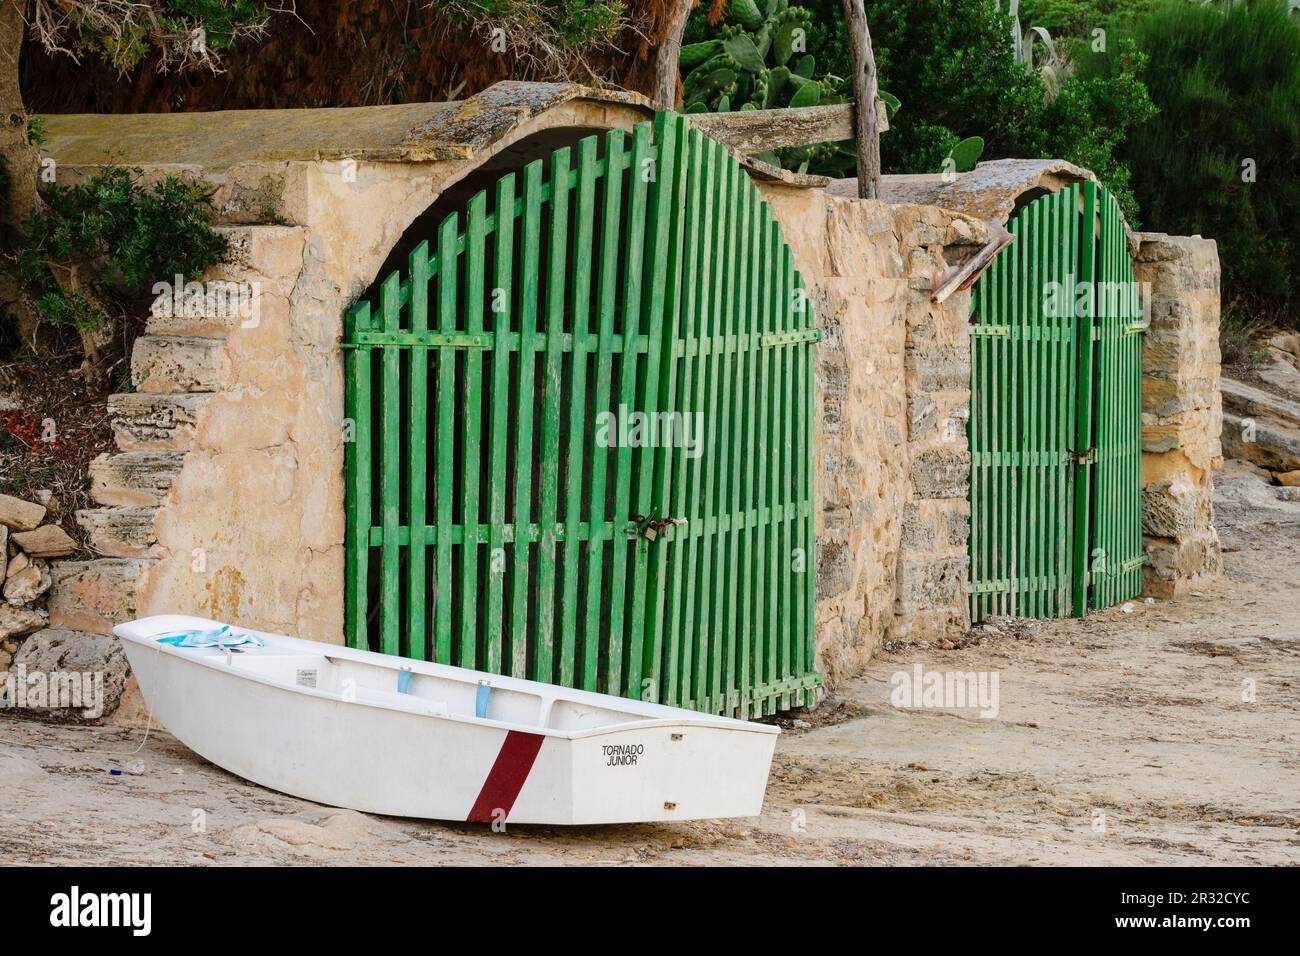 Escars, poblado de pescadores de s' Estalella, llucmajor, islas baleares, Spain. Stock Photo